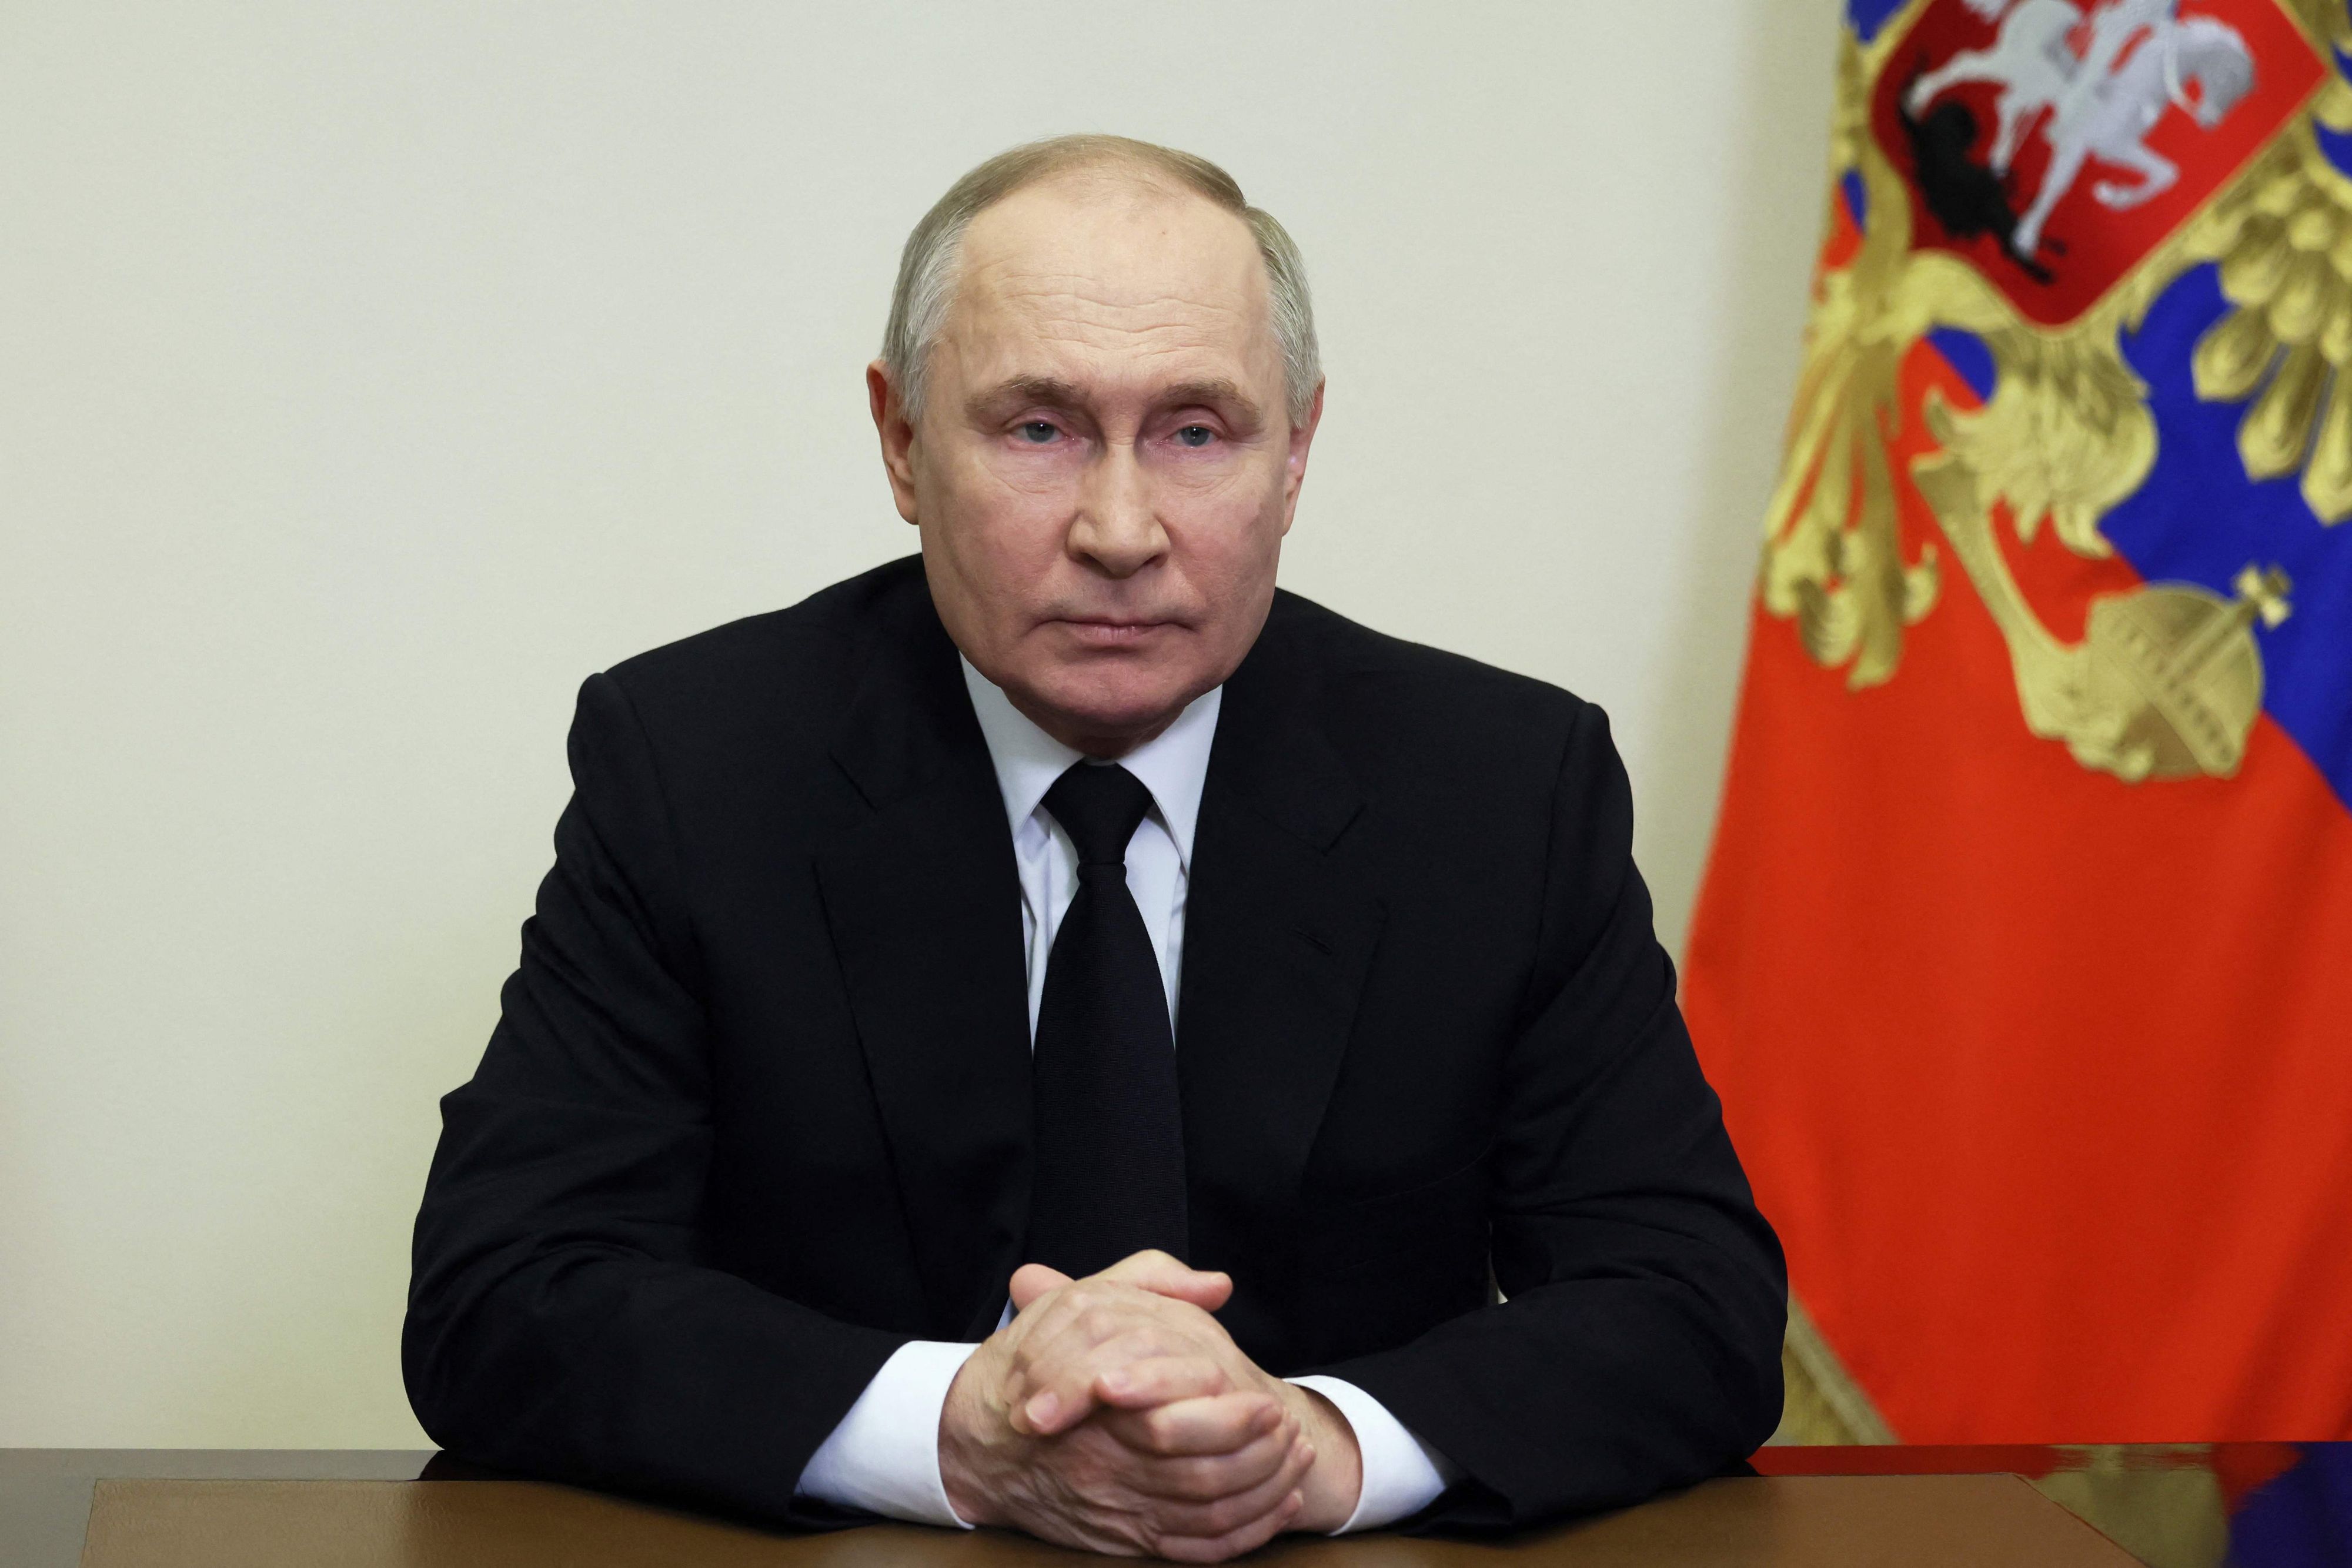 Poutine absent des hommages, le Kremlin assure qu'il est peiné